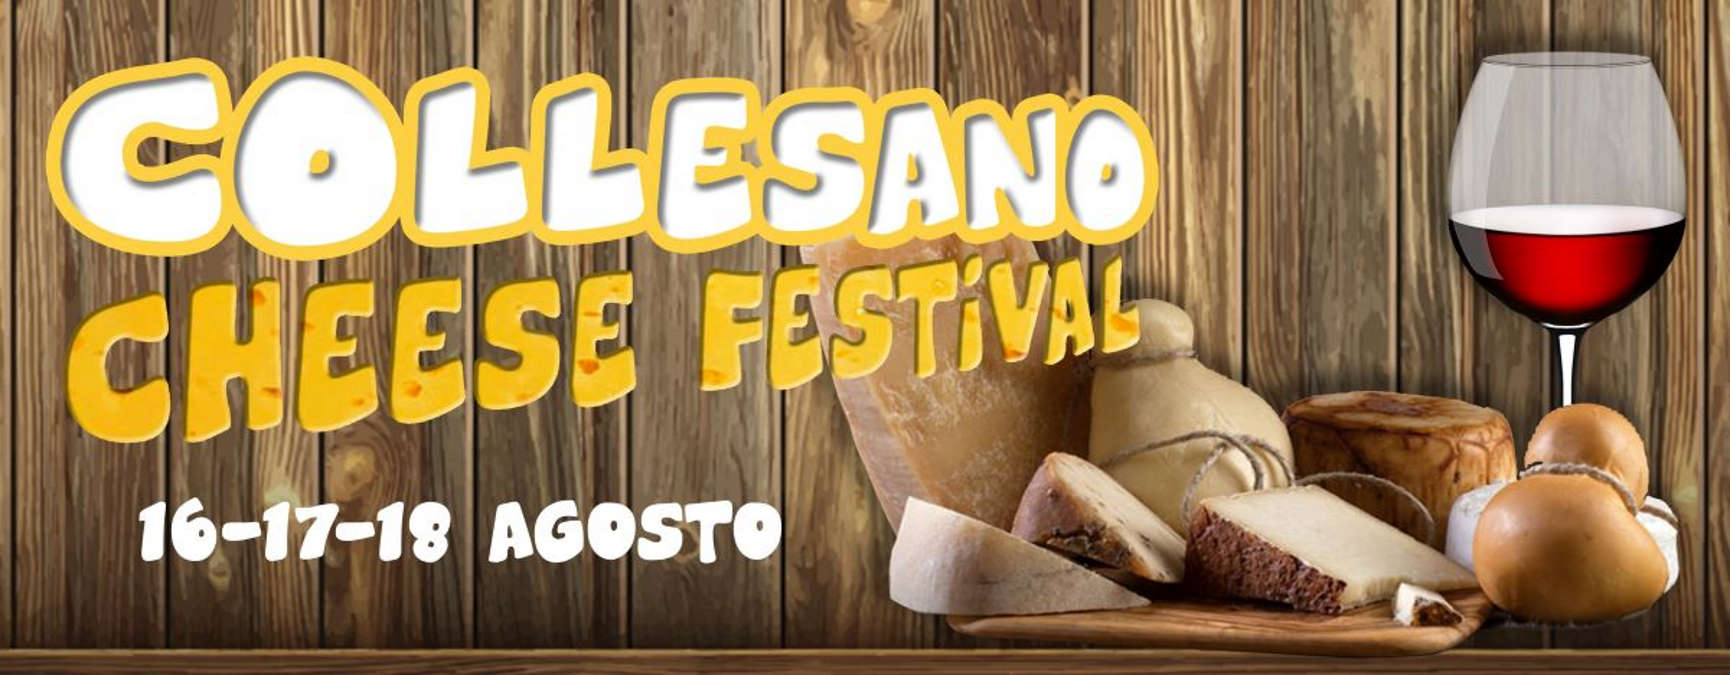 Collesano Cheese Festival, l’evento che mette a centro le eccellenze casearie madonite